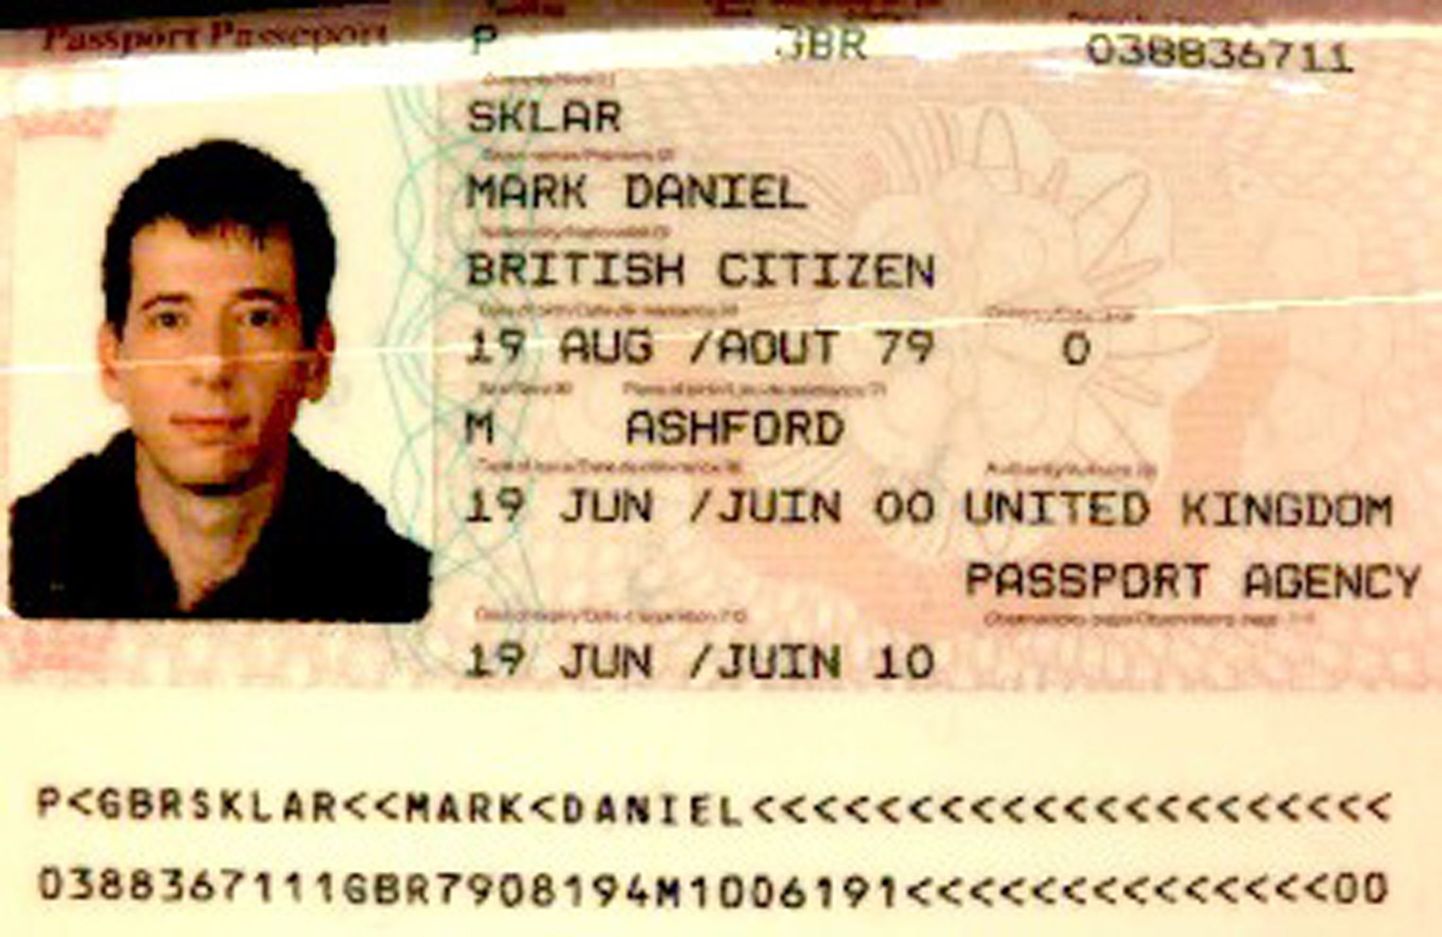 Dubai mõrvajuhtumida seostatud Suurbritannia kodaniku Mark Daniel Sklari pass.